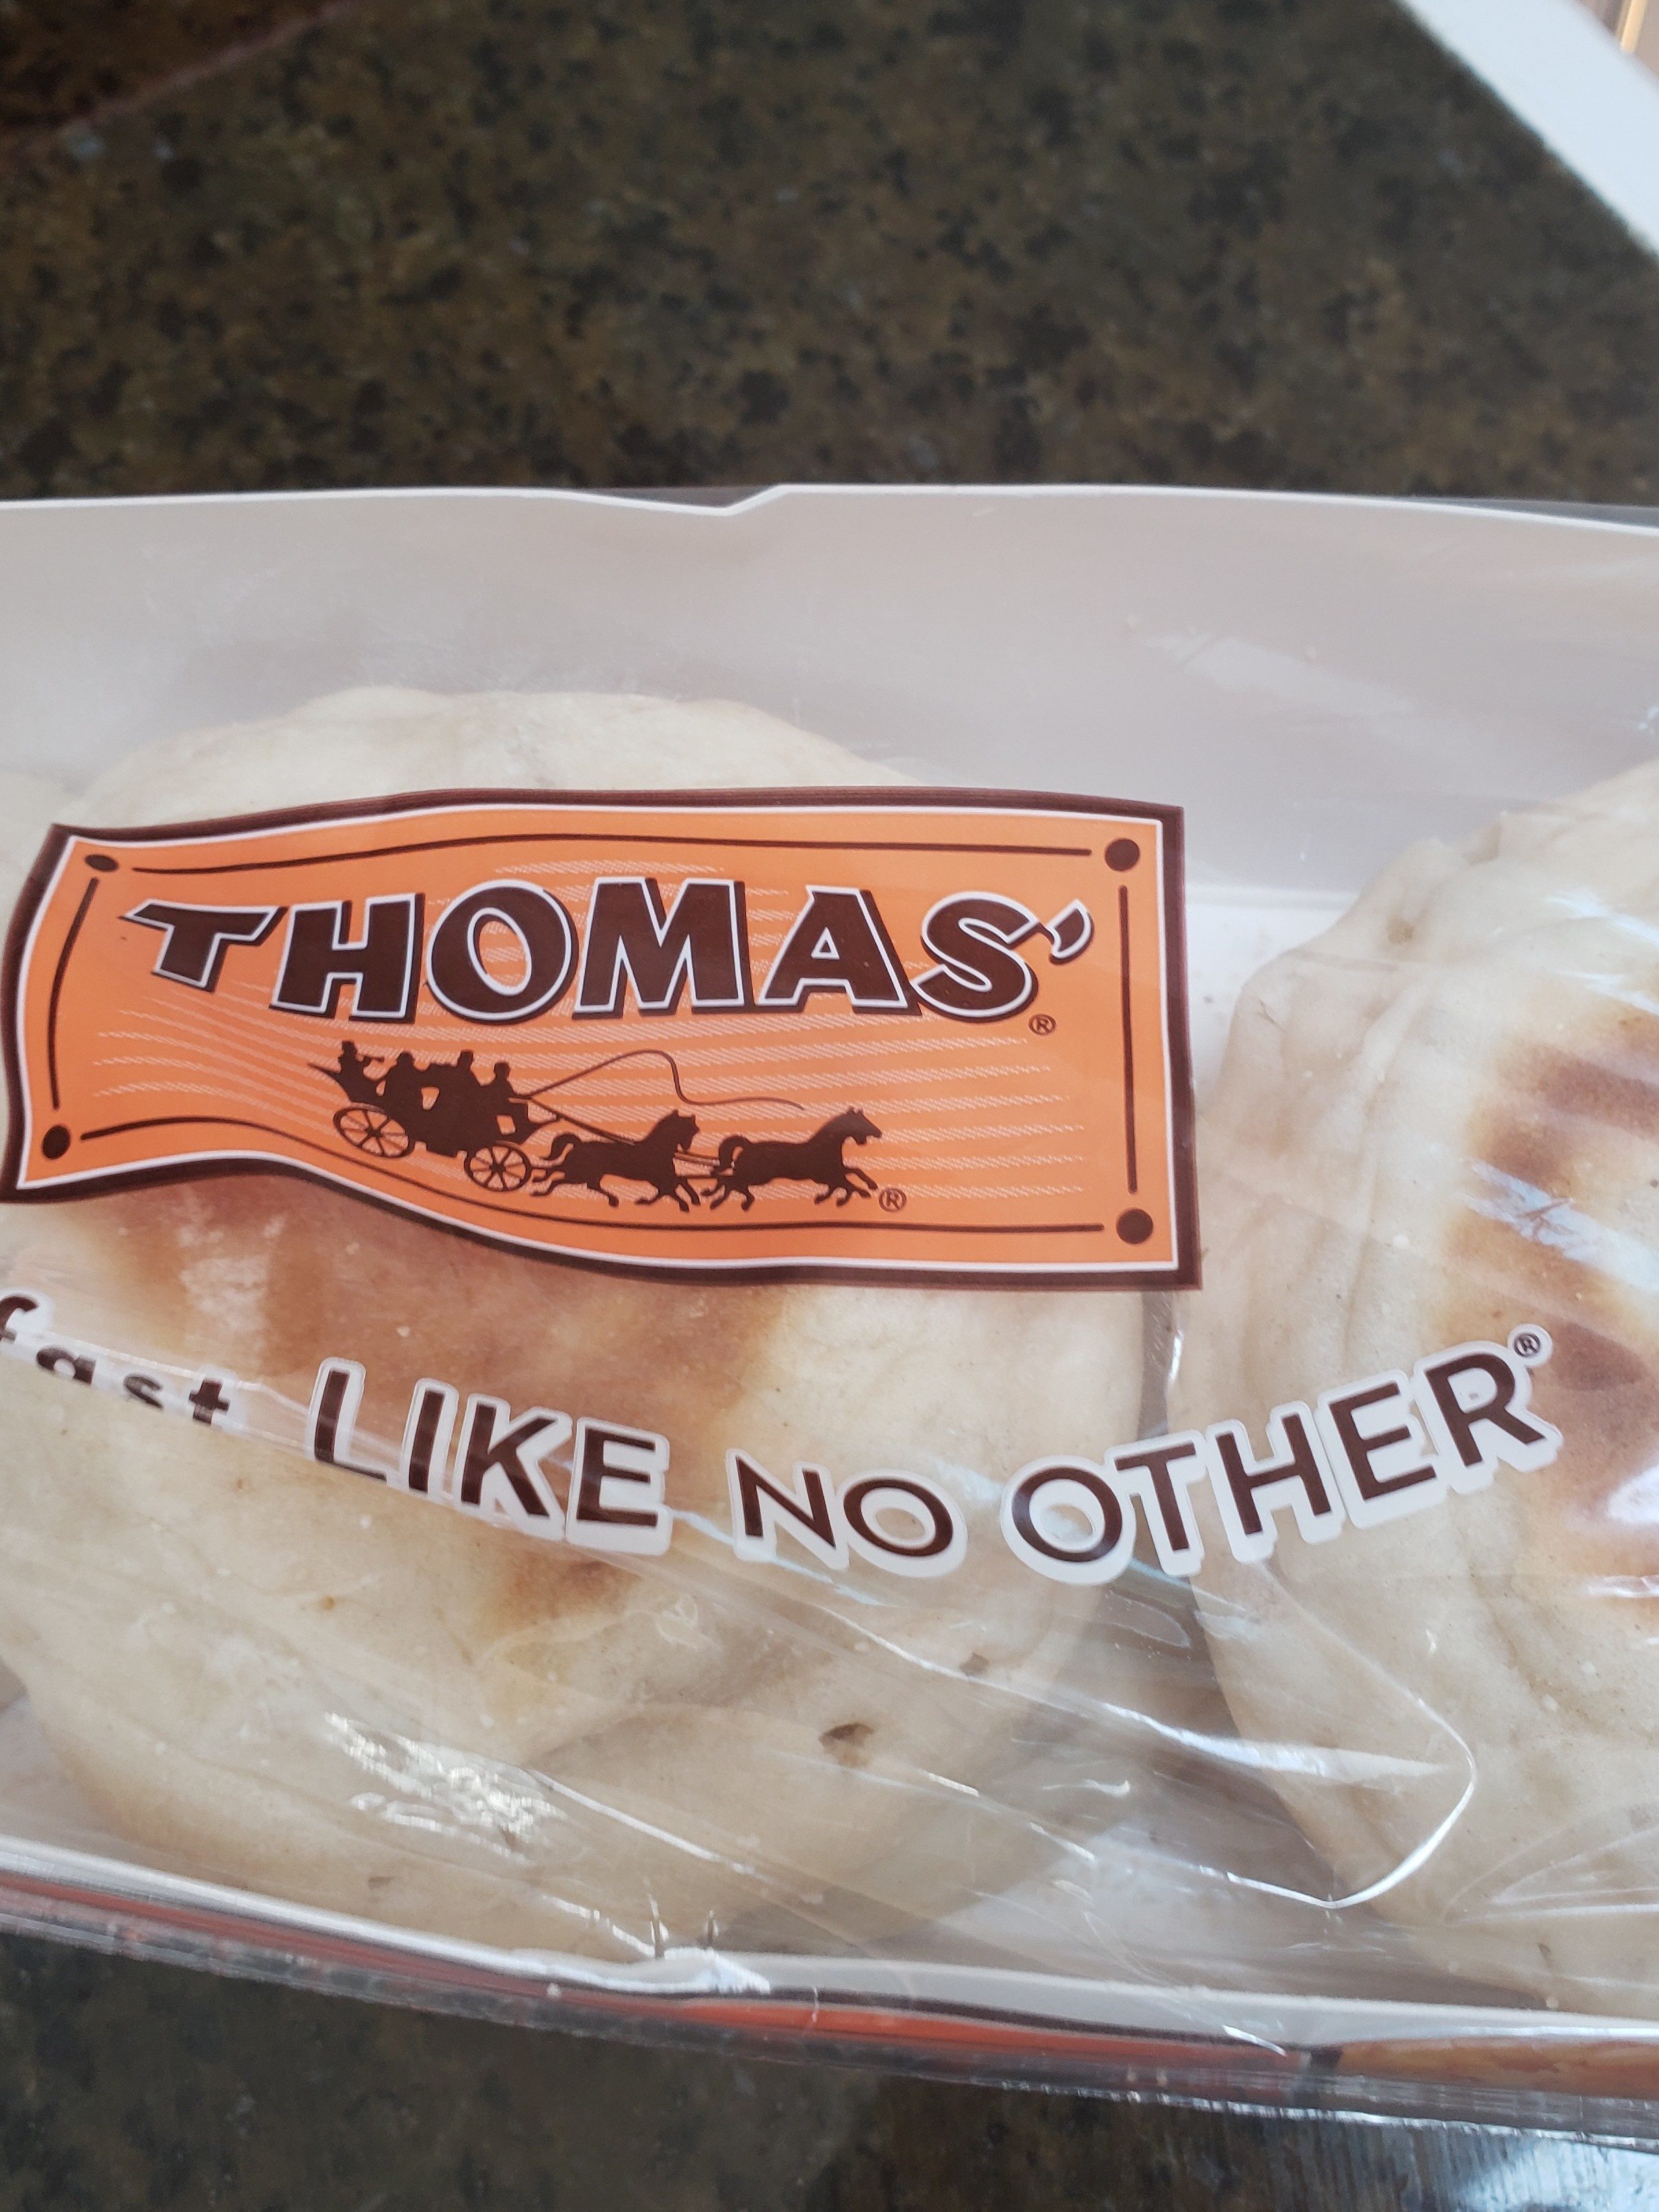 Thomas original english muffins - Produkt - en